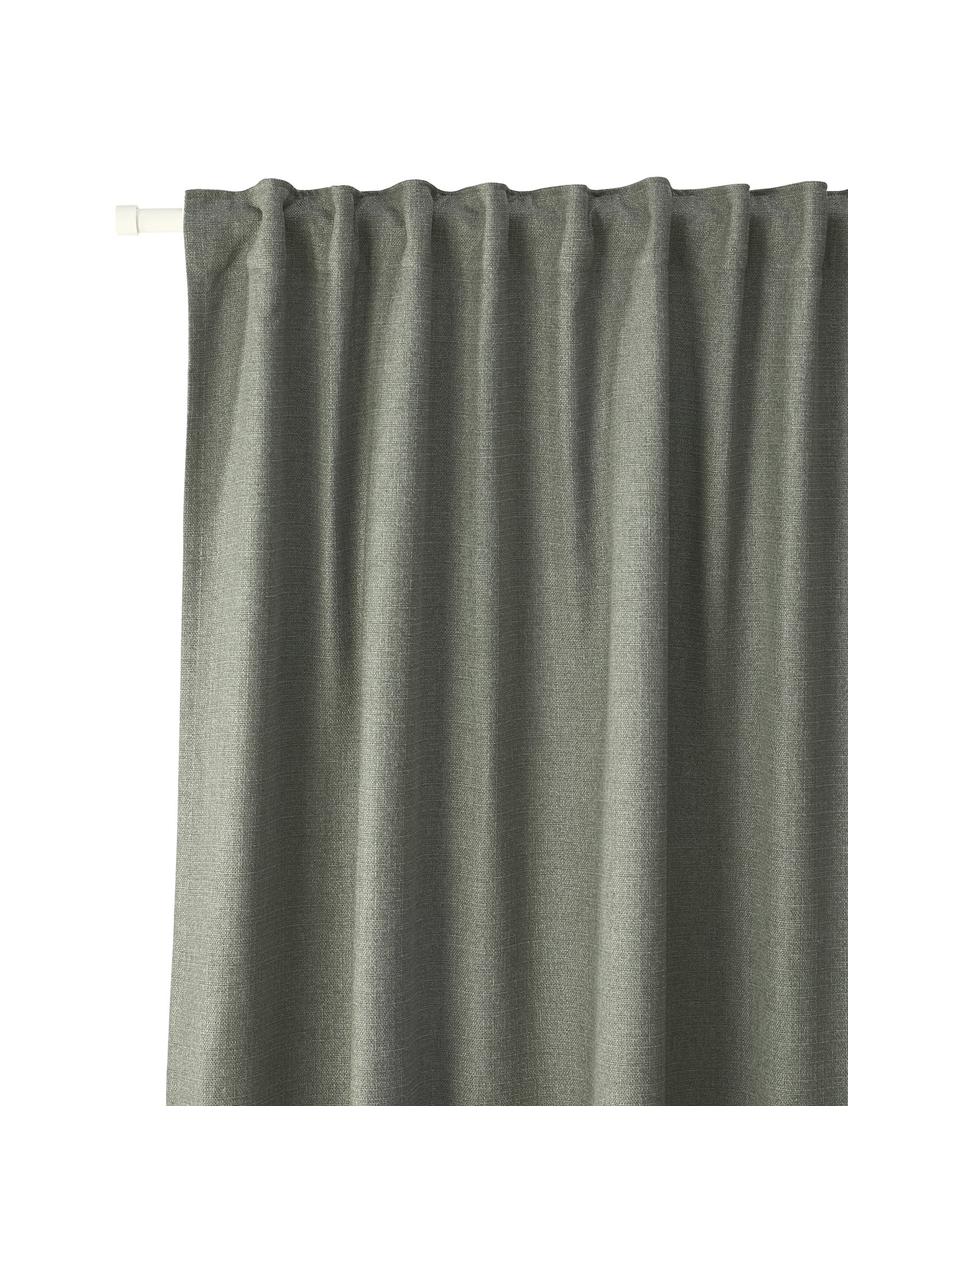 Zatemňovací závěsy s multifunkční páskou Jensen, 2 ks, 95% polyester, 5% nylon, Olivově zelená, Š 130 cm, D 260 cm